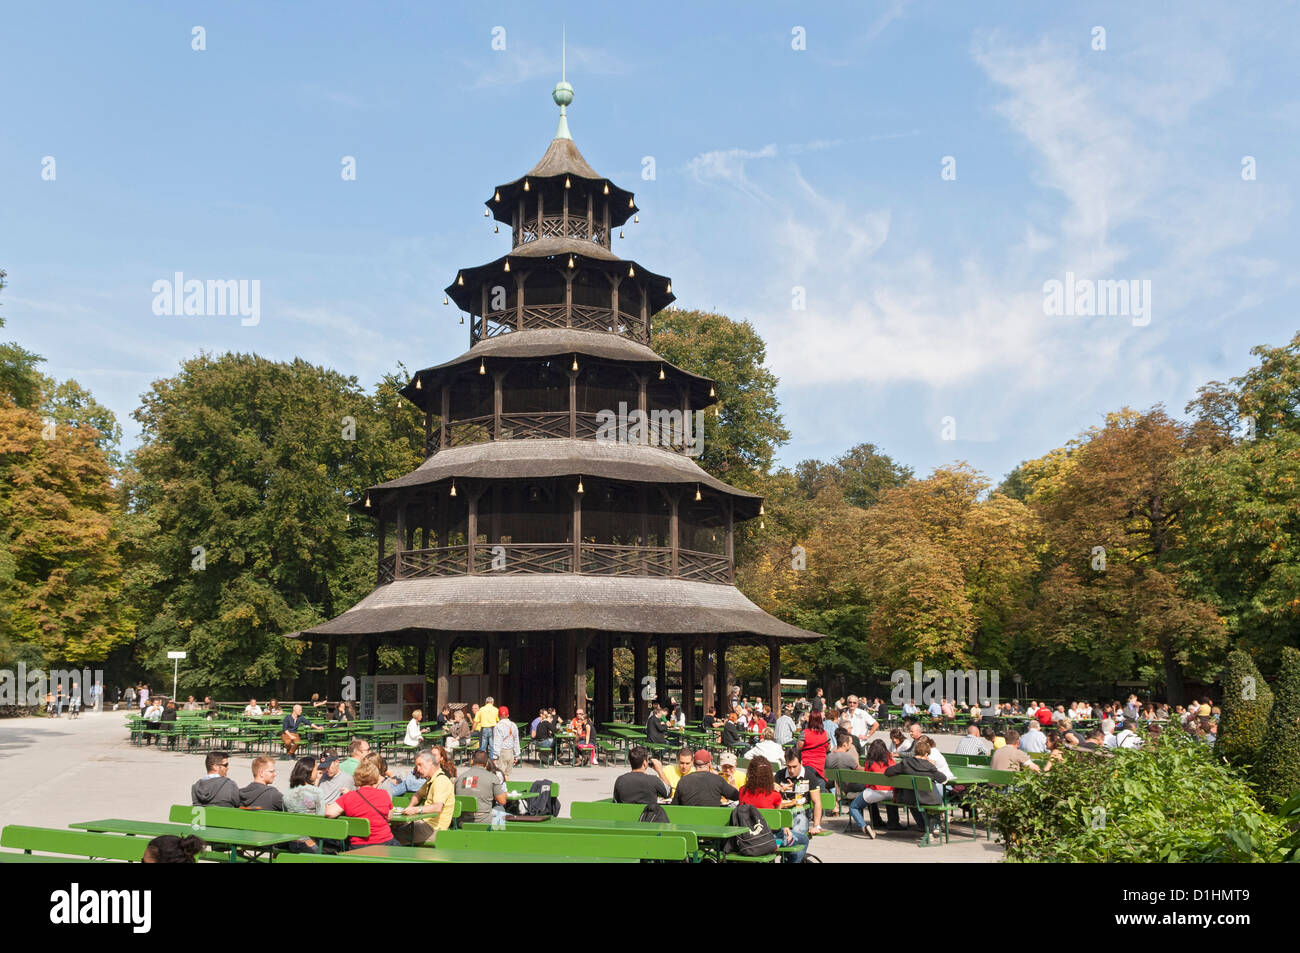 Chinesischer Turm mit Biergarten in Englischer Garten, Munich Stock